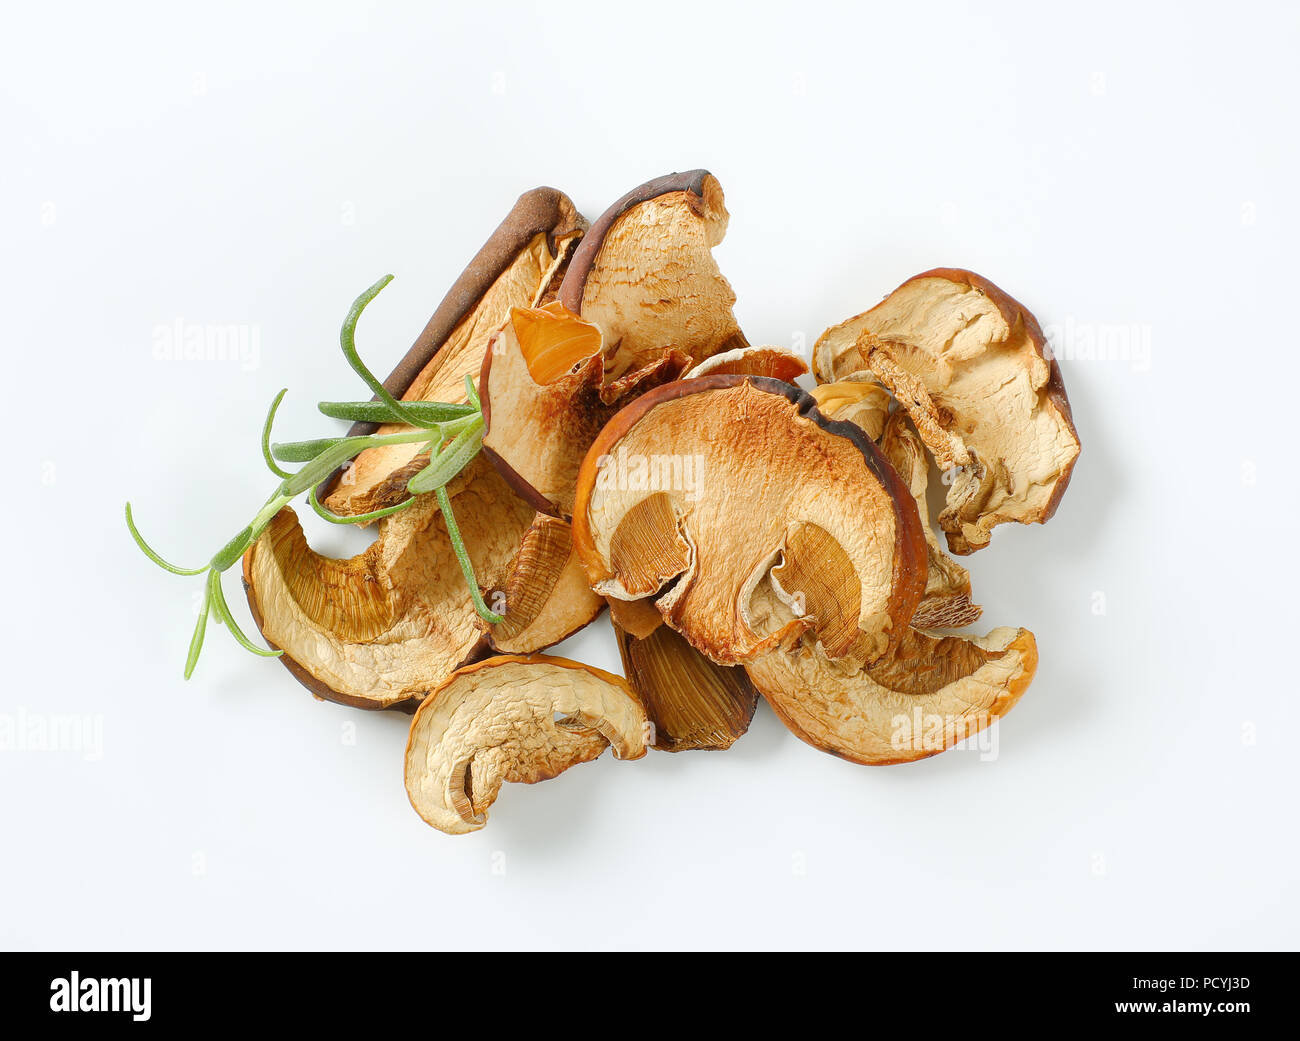 Pugno di funghi secchi e di rosmarino fresco su sfondo bianco Foto Stock